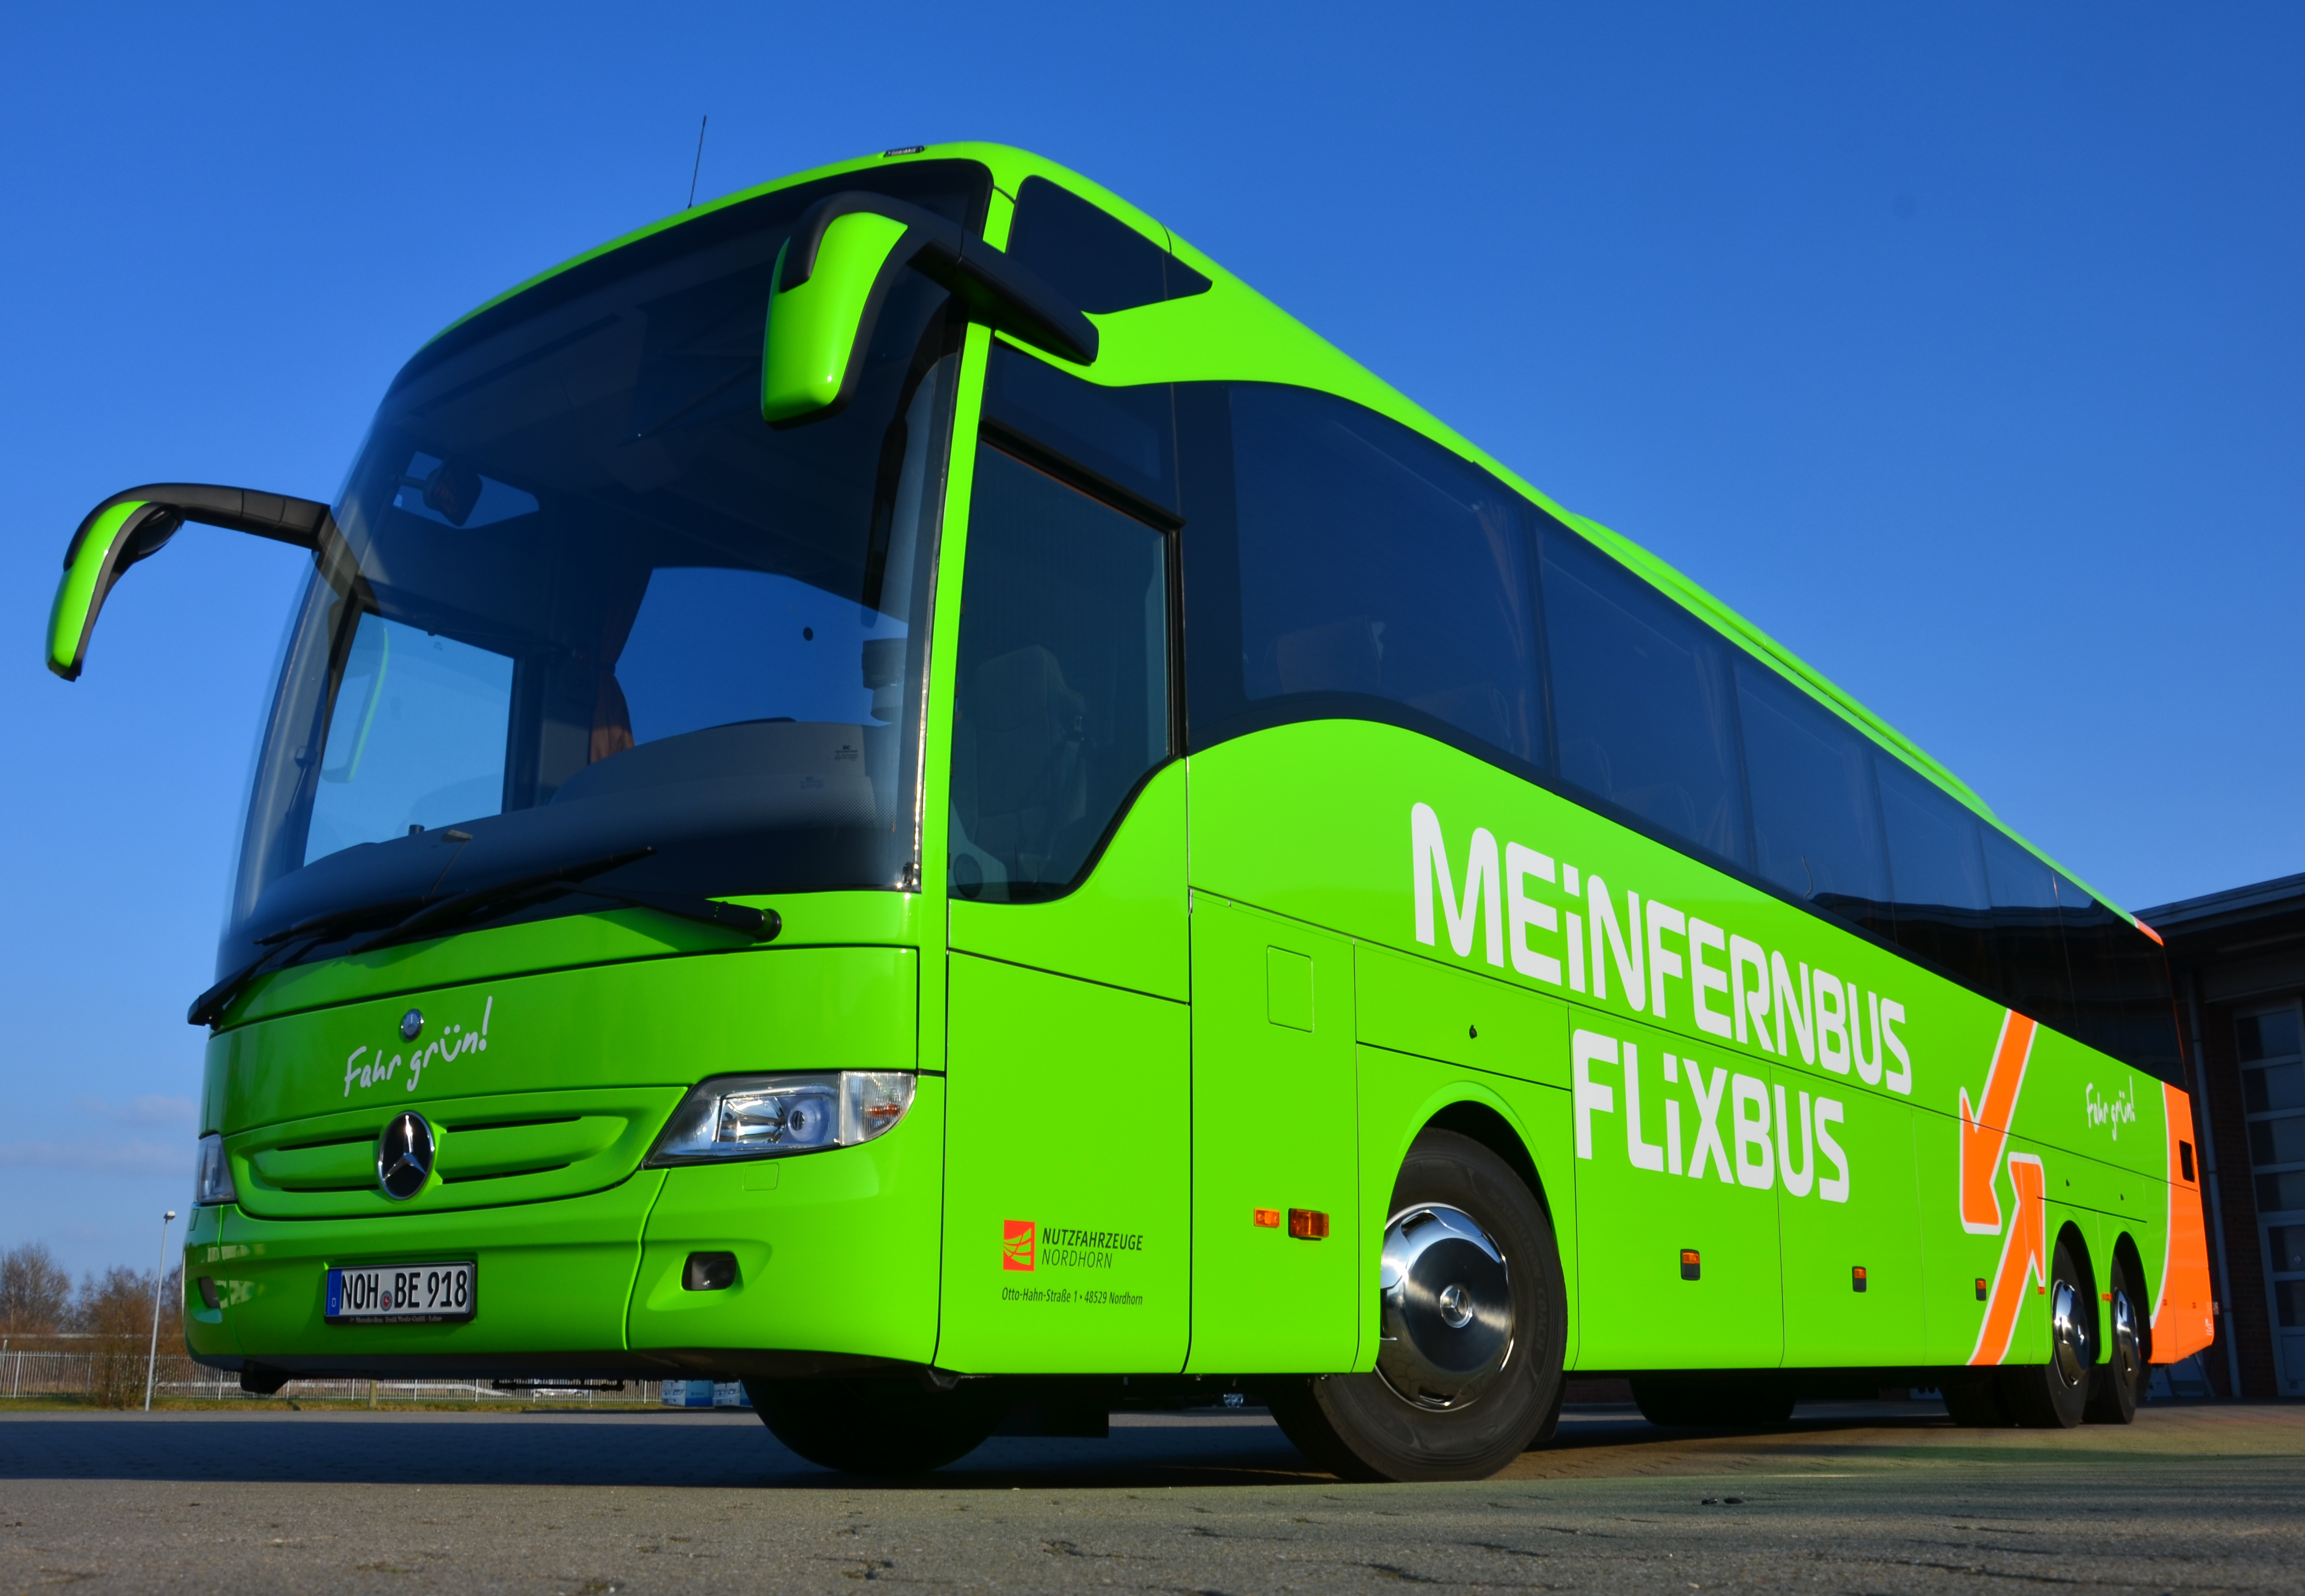 3€ Flixbus Gutschein 2017 auf FernbusFahrten » Travel